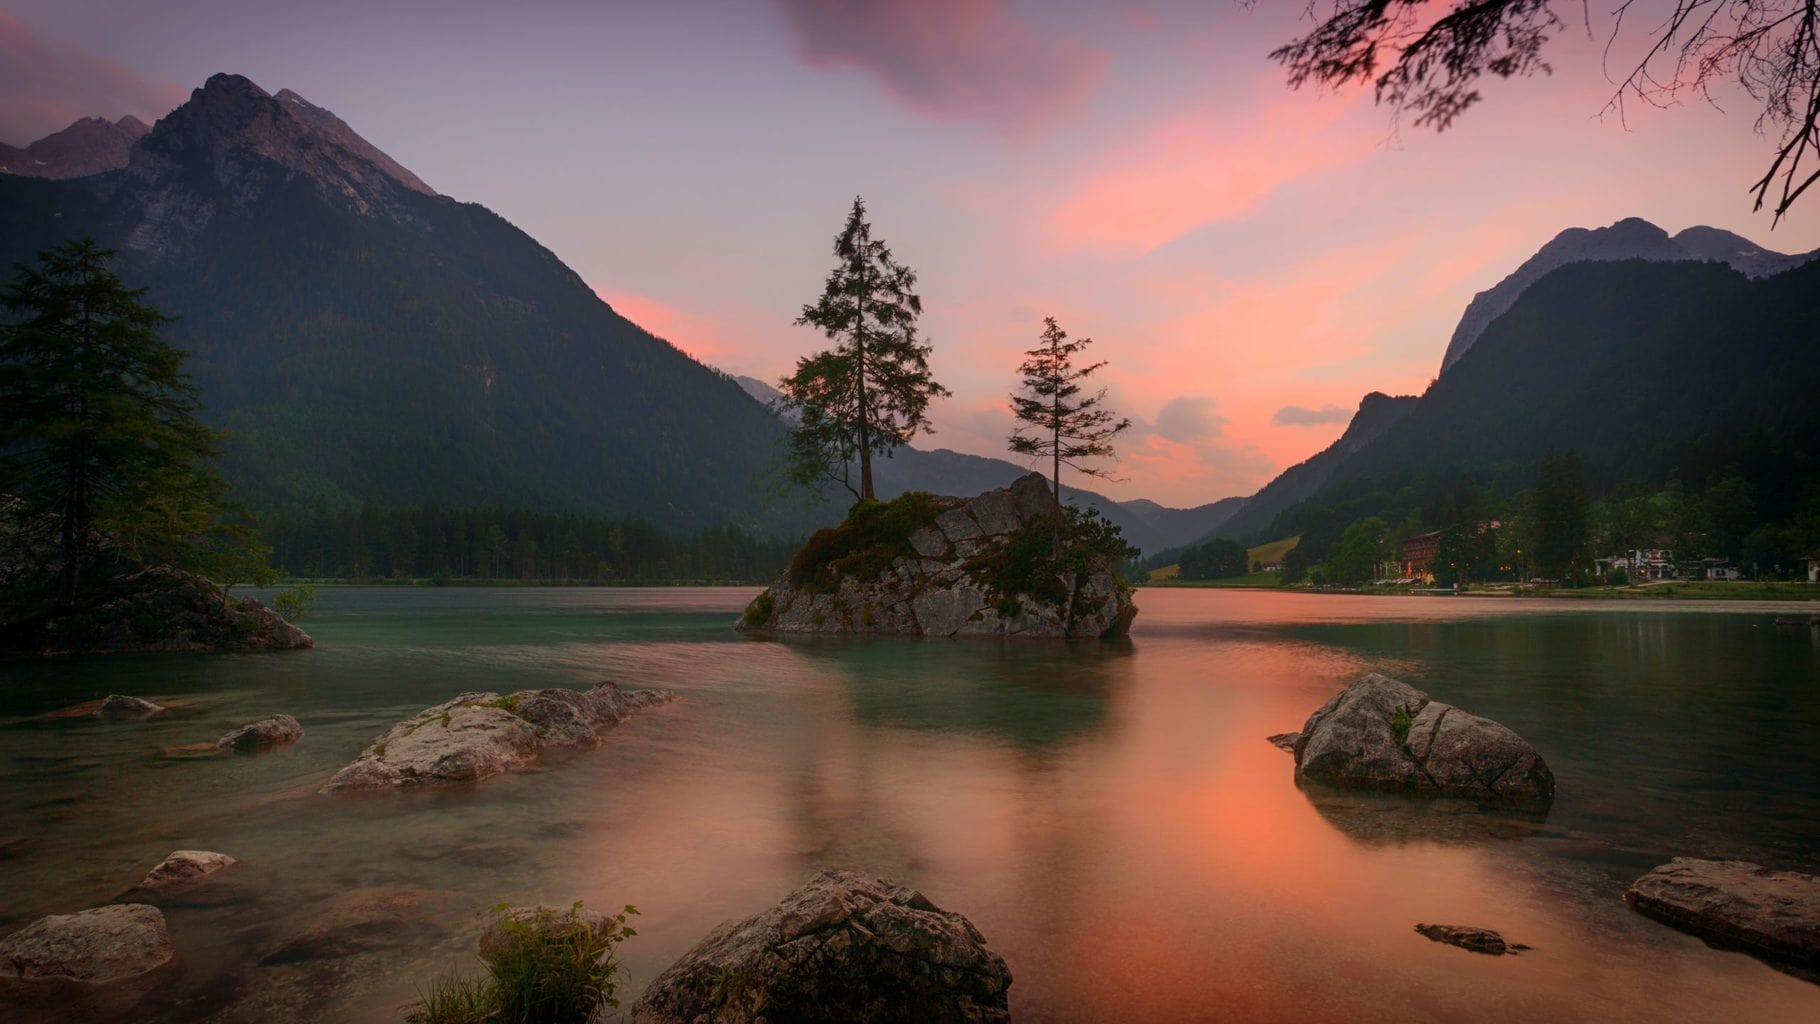 De Koenigssee in Nationaal Park Berchtesgadener Land